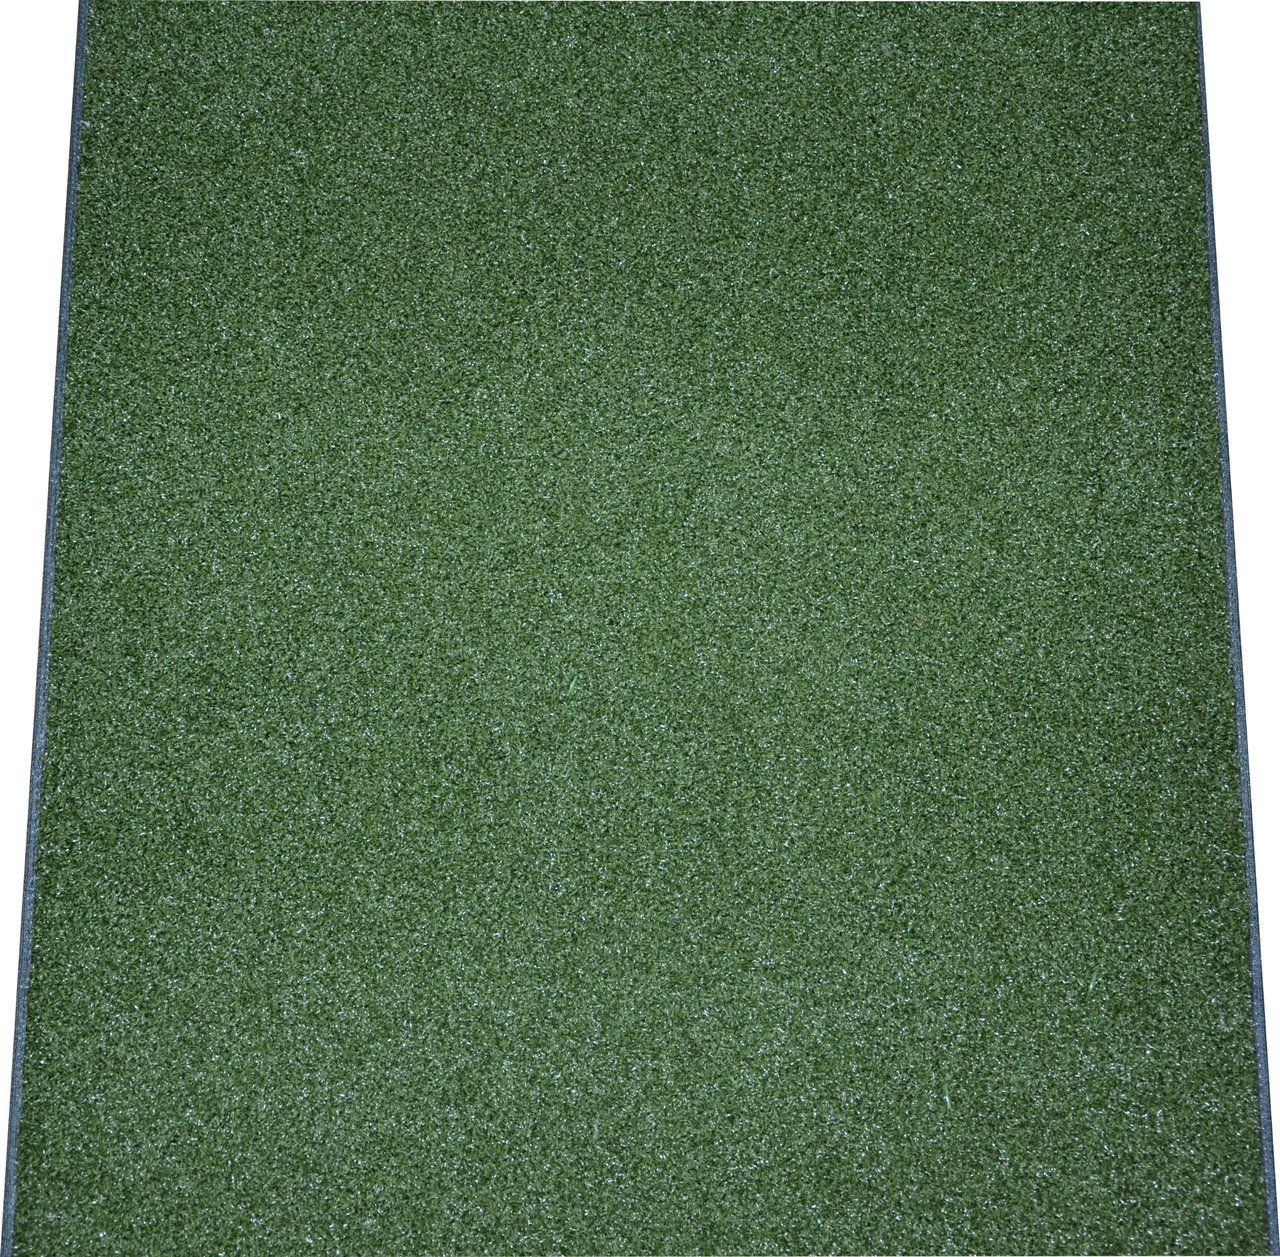 Armani reccomend Redhead grass mats